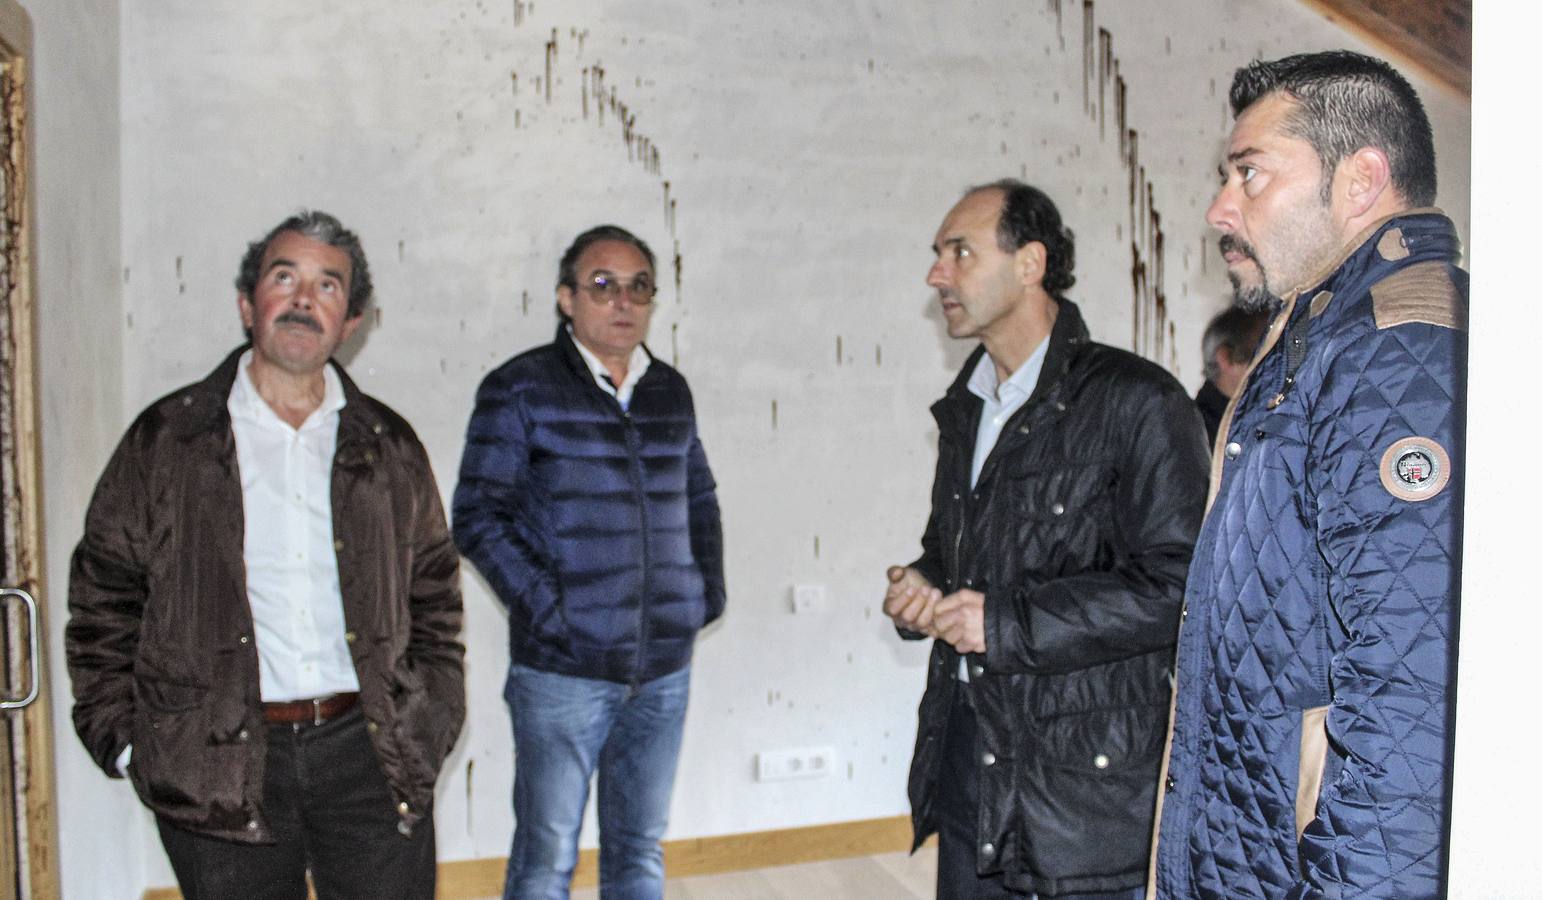 Martínez Penagos, a la izquierda de la imagen, el pasado año, cuando un grupo de desconocidos provocaron desperfectos en su casa.